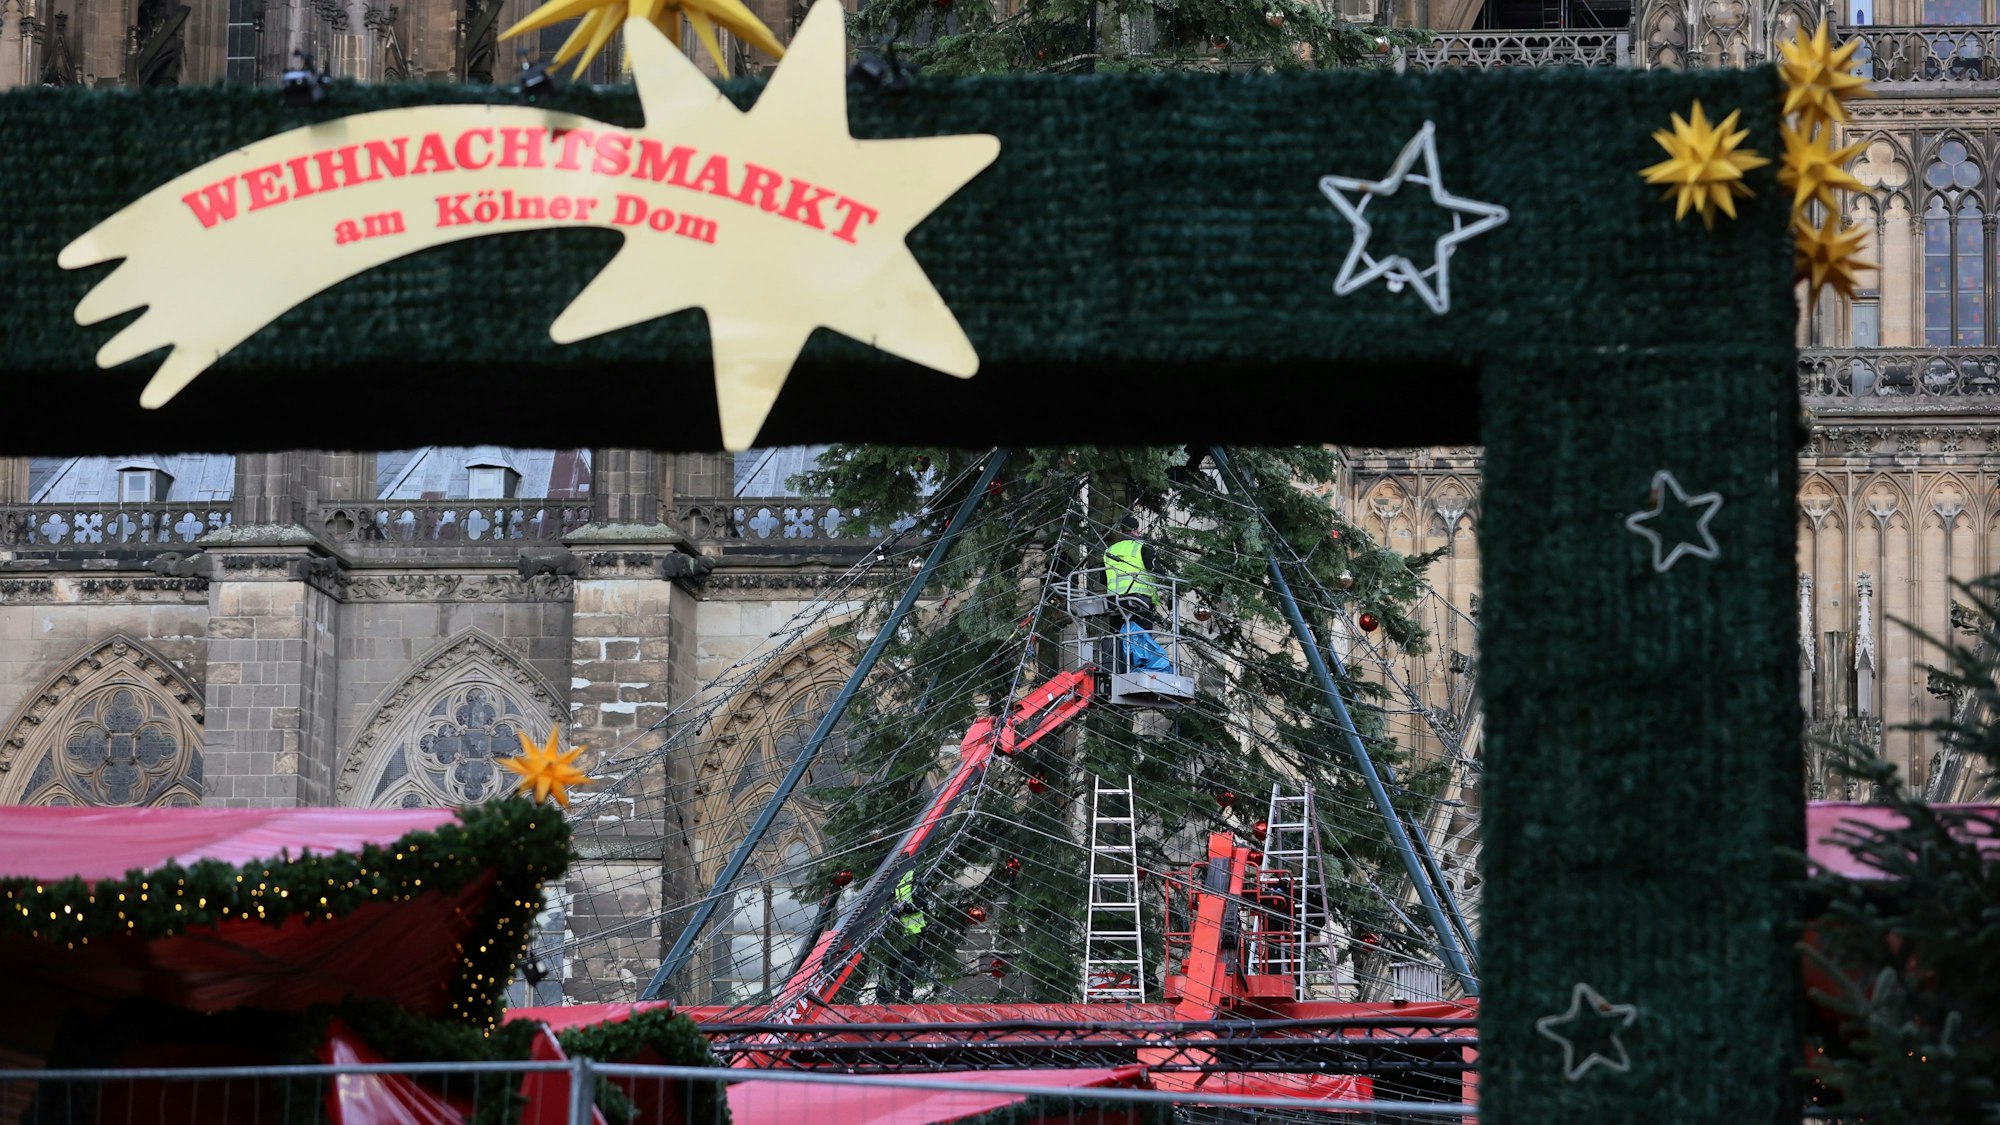 Weihnachtsmarkt Roncalliplatz, Der Abbau der Kölner Weihnachtsmärkte hat begonnen, der überwiegende Teil aller Märkte hat nur bis zum 23. Dezember geöffnet, danach starten die Abbauarbeiten, 26.12.2023, Bild: Herbert Bucco

